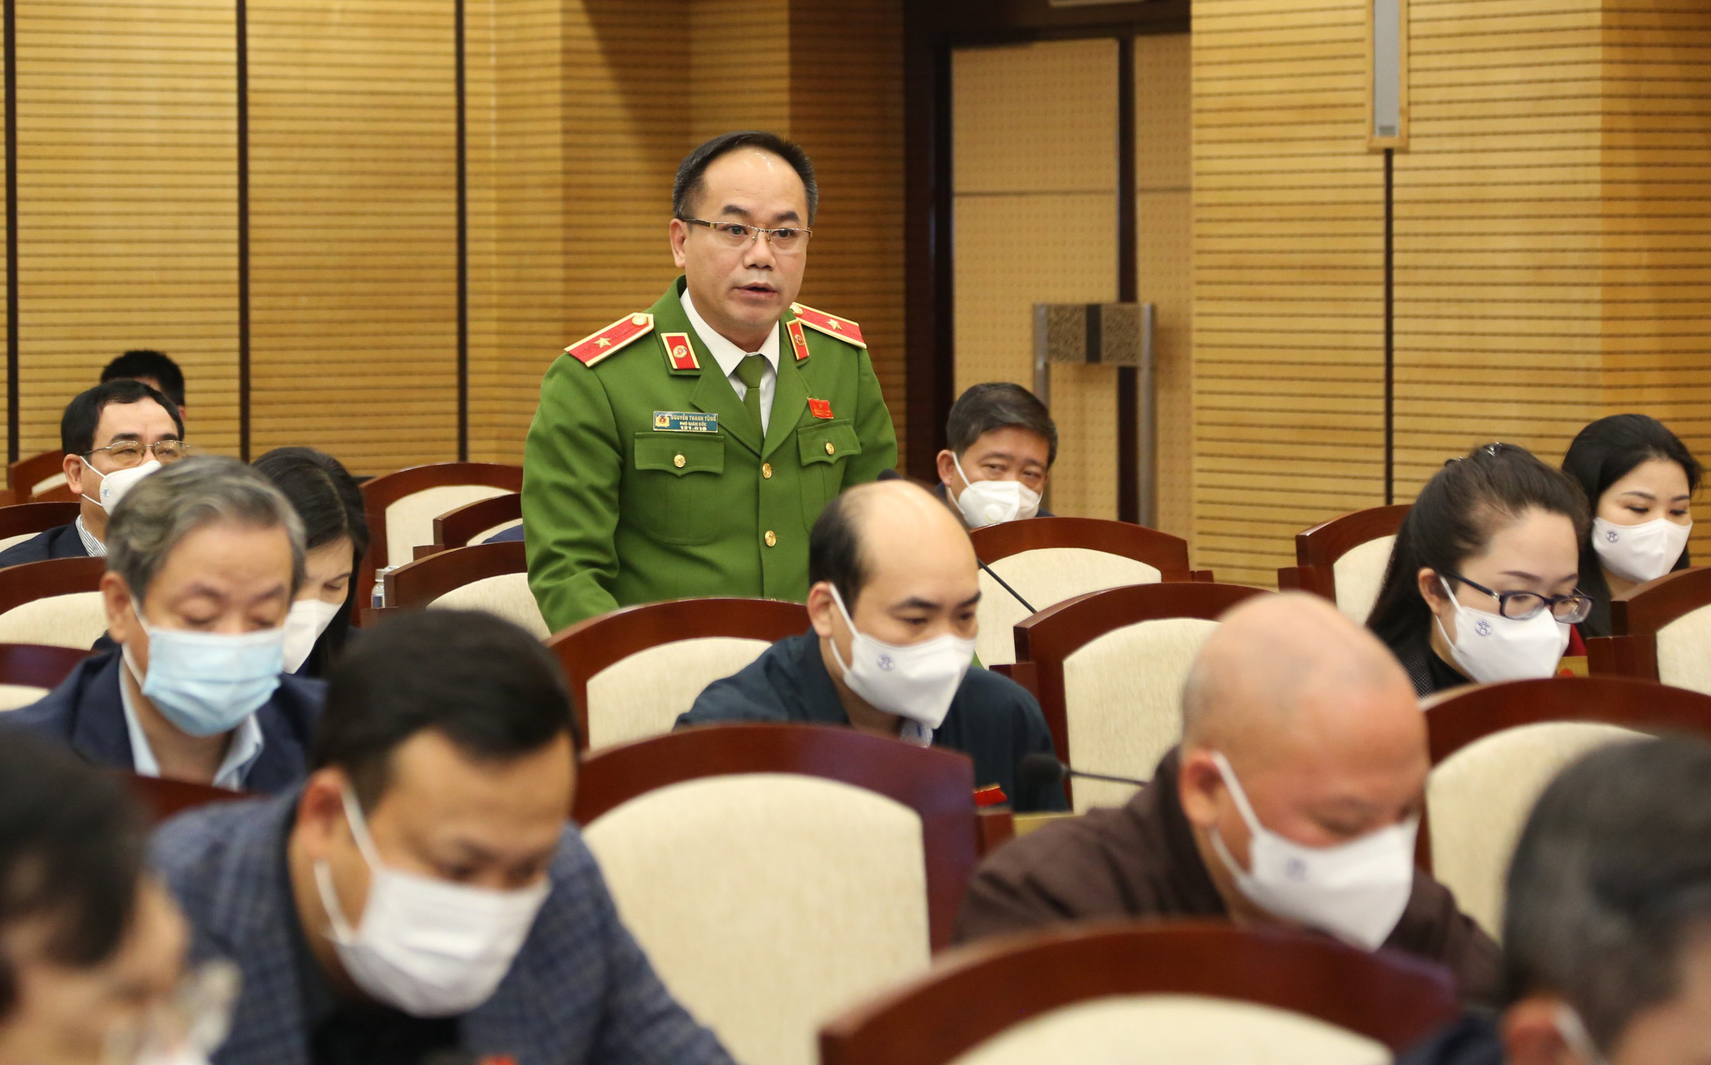 Thiếu tướng Nguyễn Thanh Tùng đề xuất lắp camera an ninh trong thành phố Hà Nội - Ảnh 1.